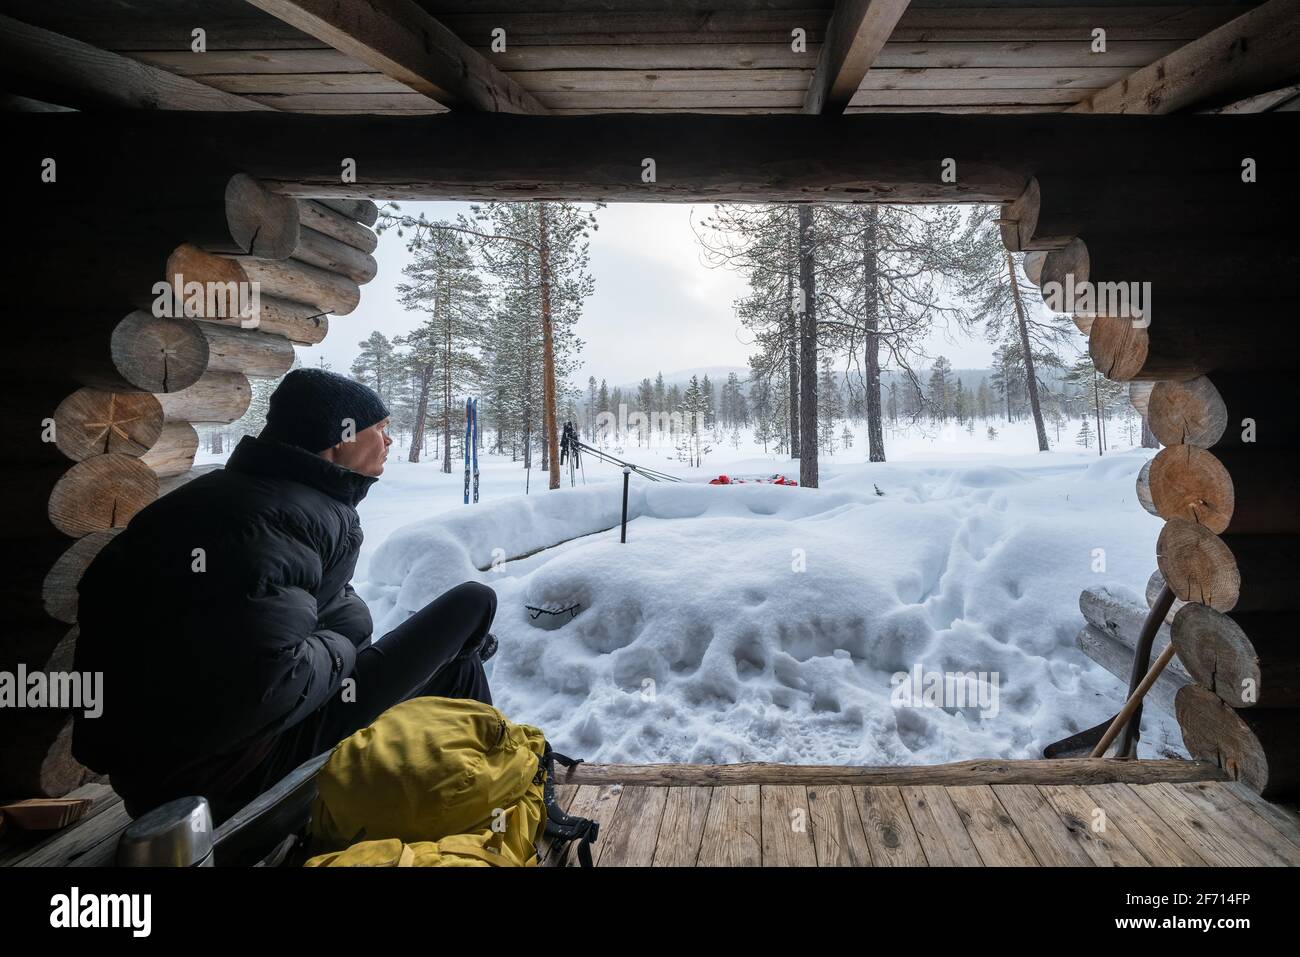 Faire une pause à Anterin pyöräparkki en vous réfugiant tout en faisant du ski dans le parc national d'Urho Kekkonen, Sodankylä, Laponie, Finlande Banque D'Images